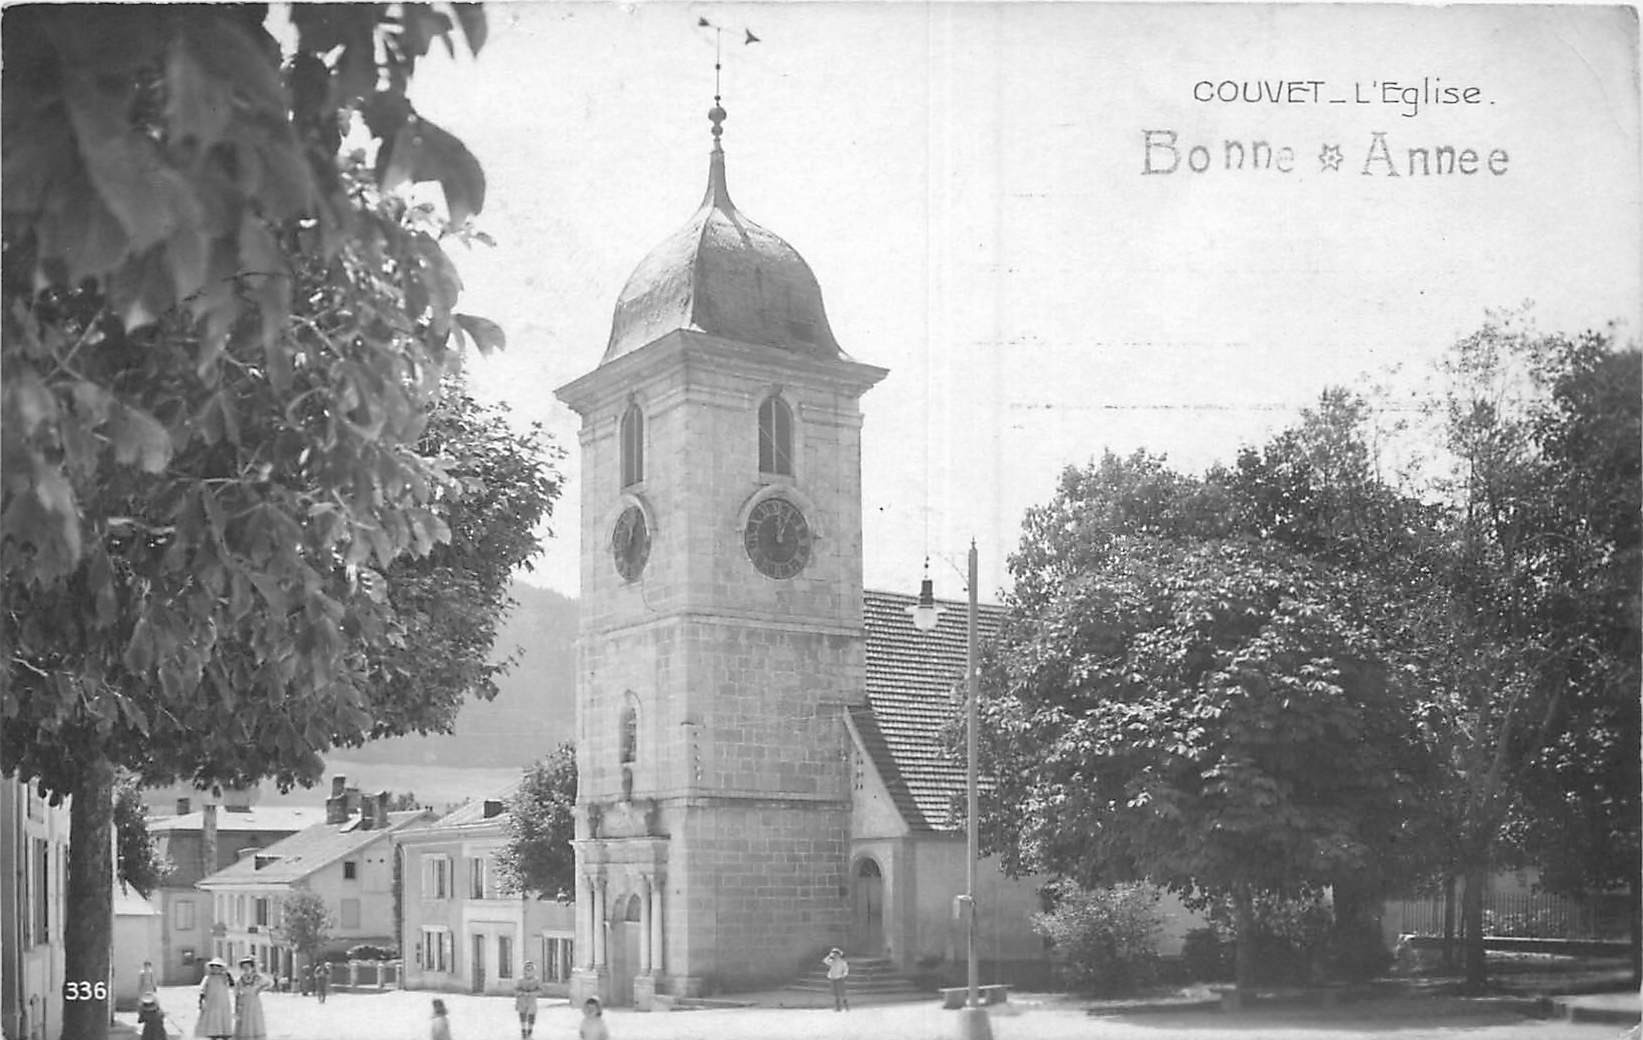 WW SUISSE. La Bonne Année de Couvet avec son Eglise en 1915